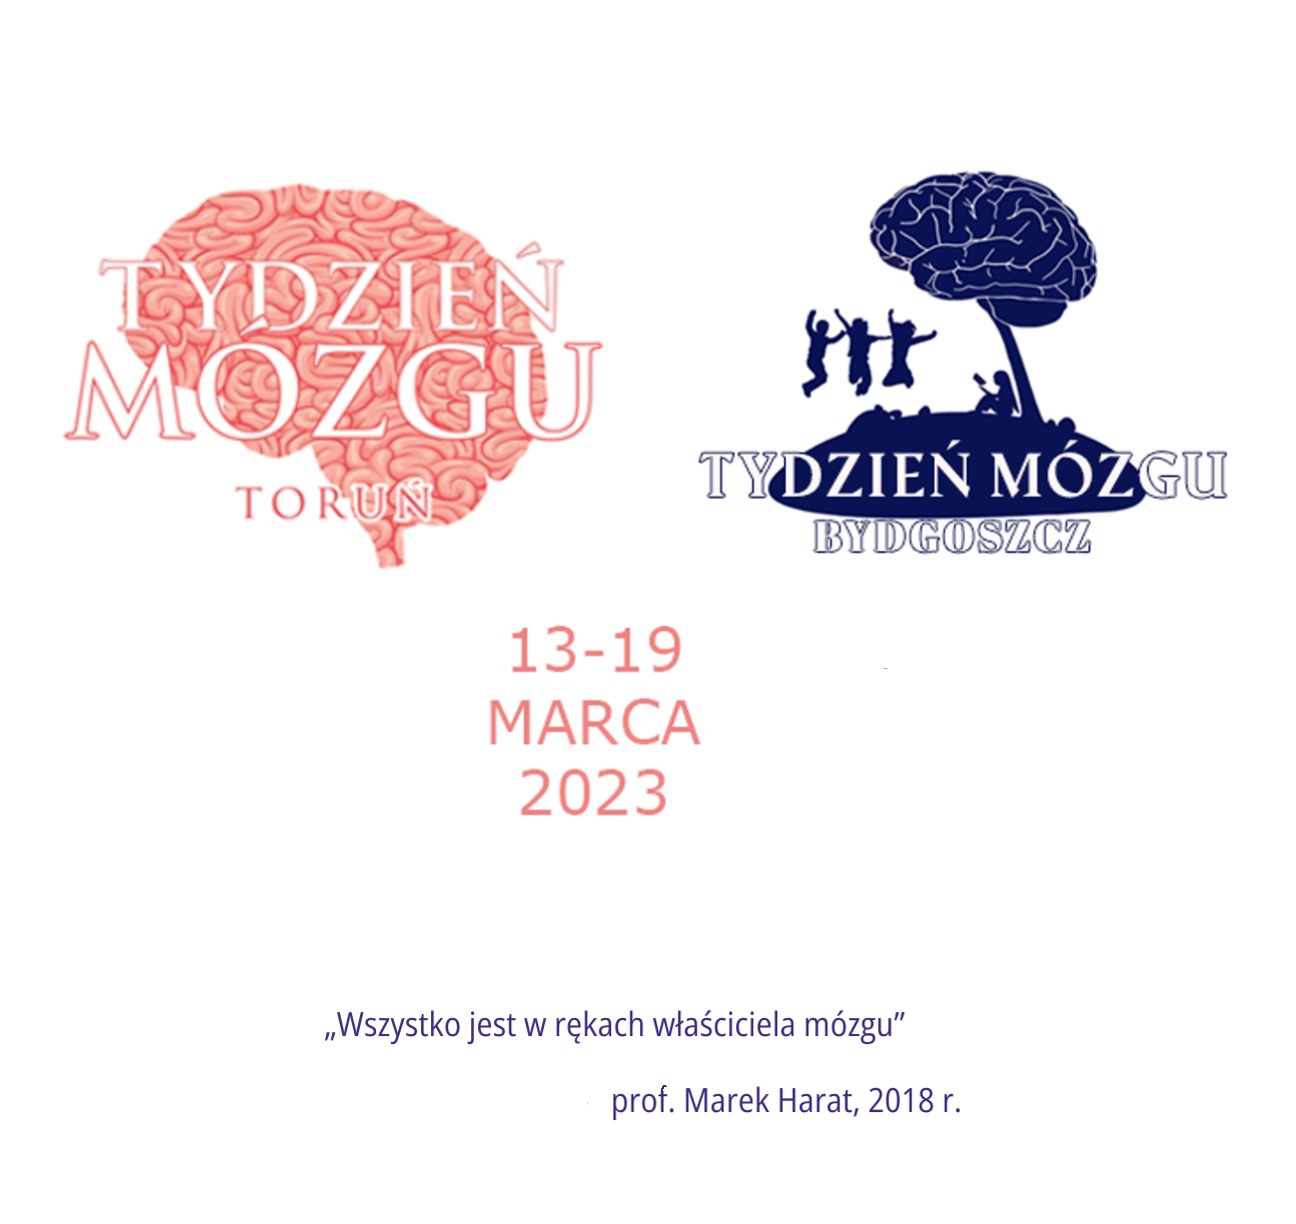 Tydzień Mózgu Toruń i Bydgoszcz - 13-19 marca 2023. "Wszystko jest w rękach właściciela mózgu" - prof. Marek Harat